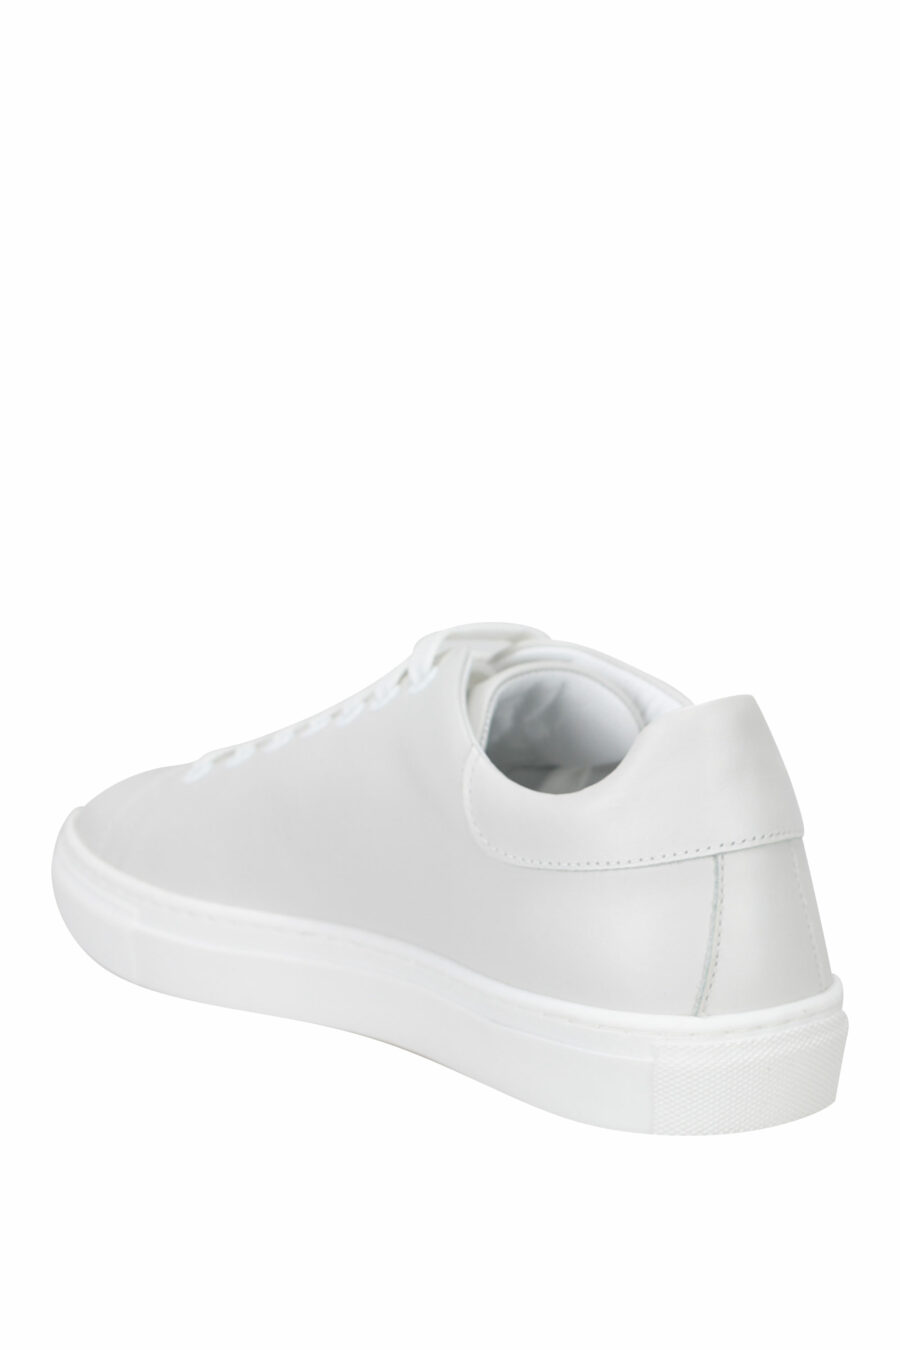 Zapatillas blancas con logo negro "lettering" - 8054653099241 3